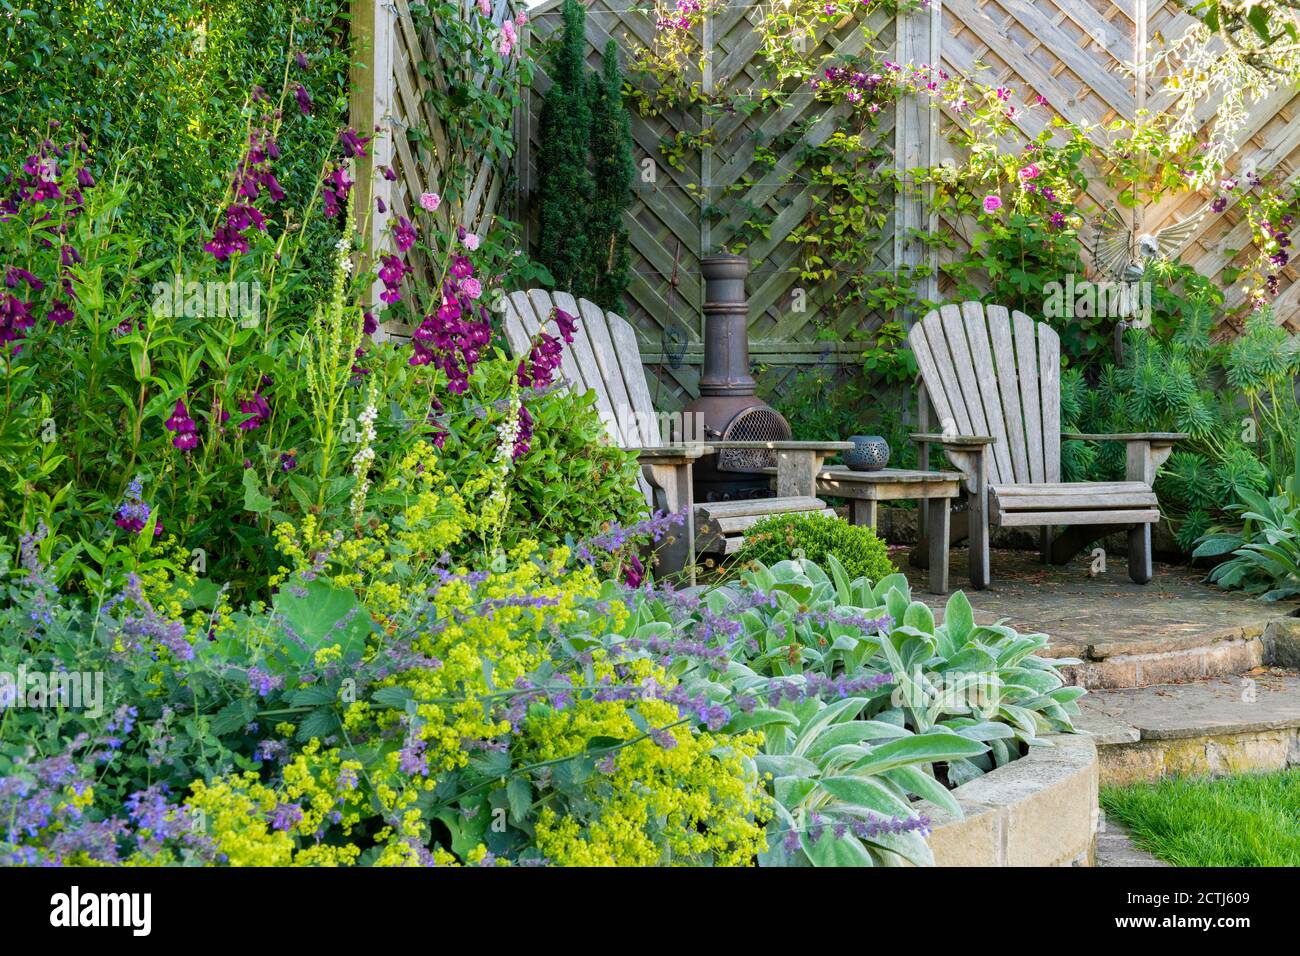 Schöner landschaftlich gestalteter privater Garten (zeitgenössisches Design, farbenfrohe Randpflanzen, Sitzecken auf der Terrasse, Zaun, dekorative Chiminea) - Yorkshire, England, Großbritannien Stockfoto